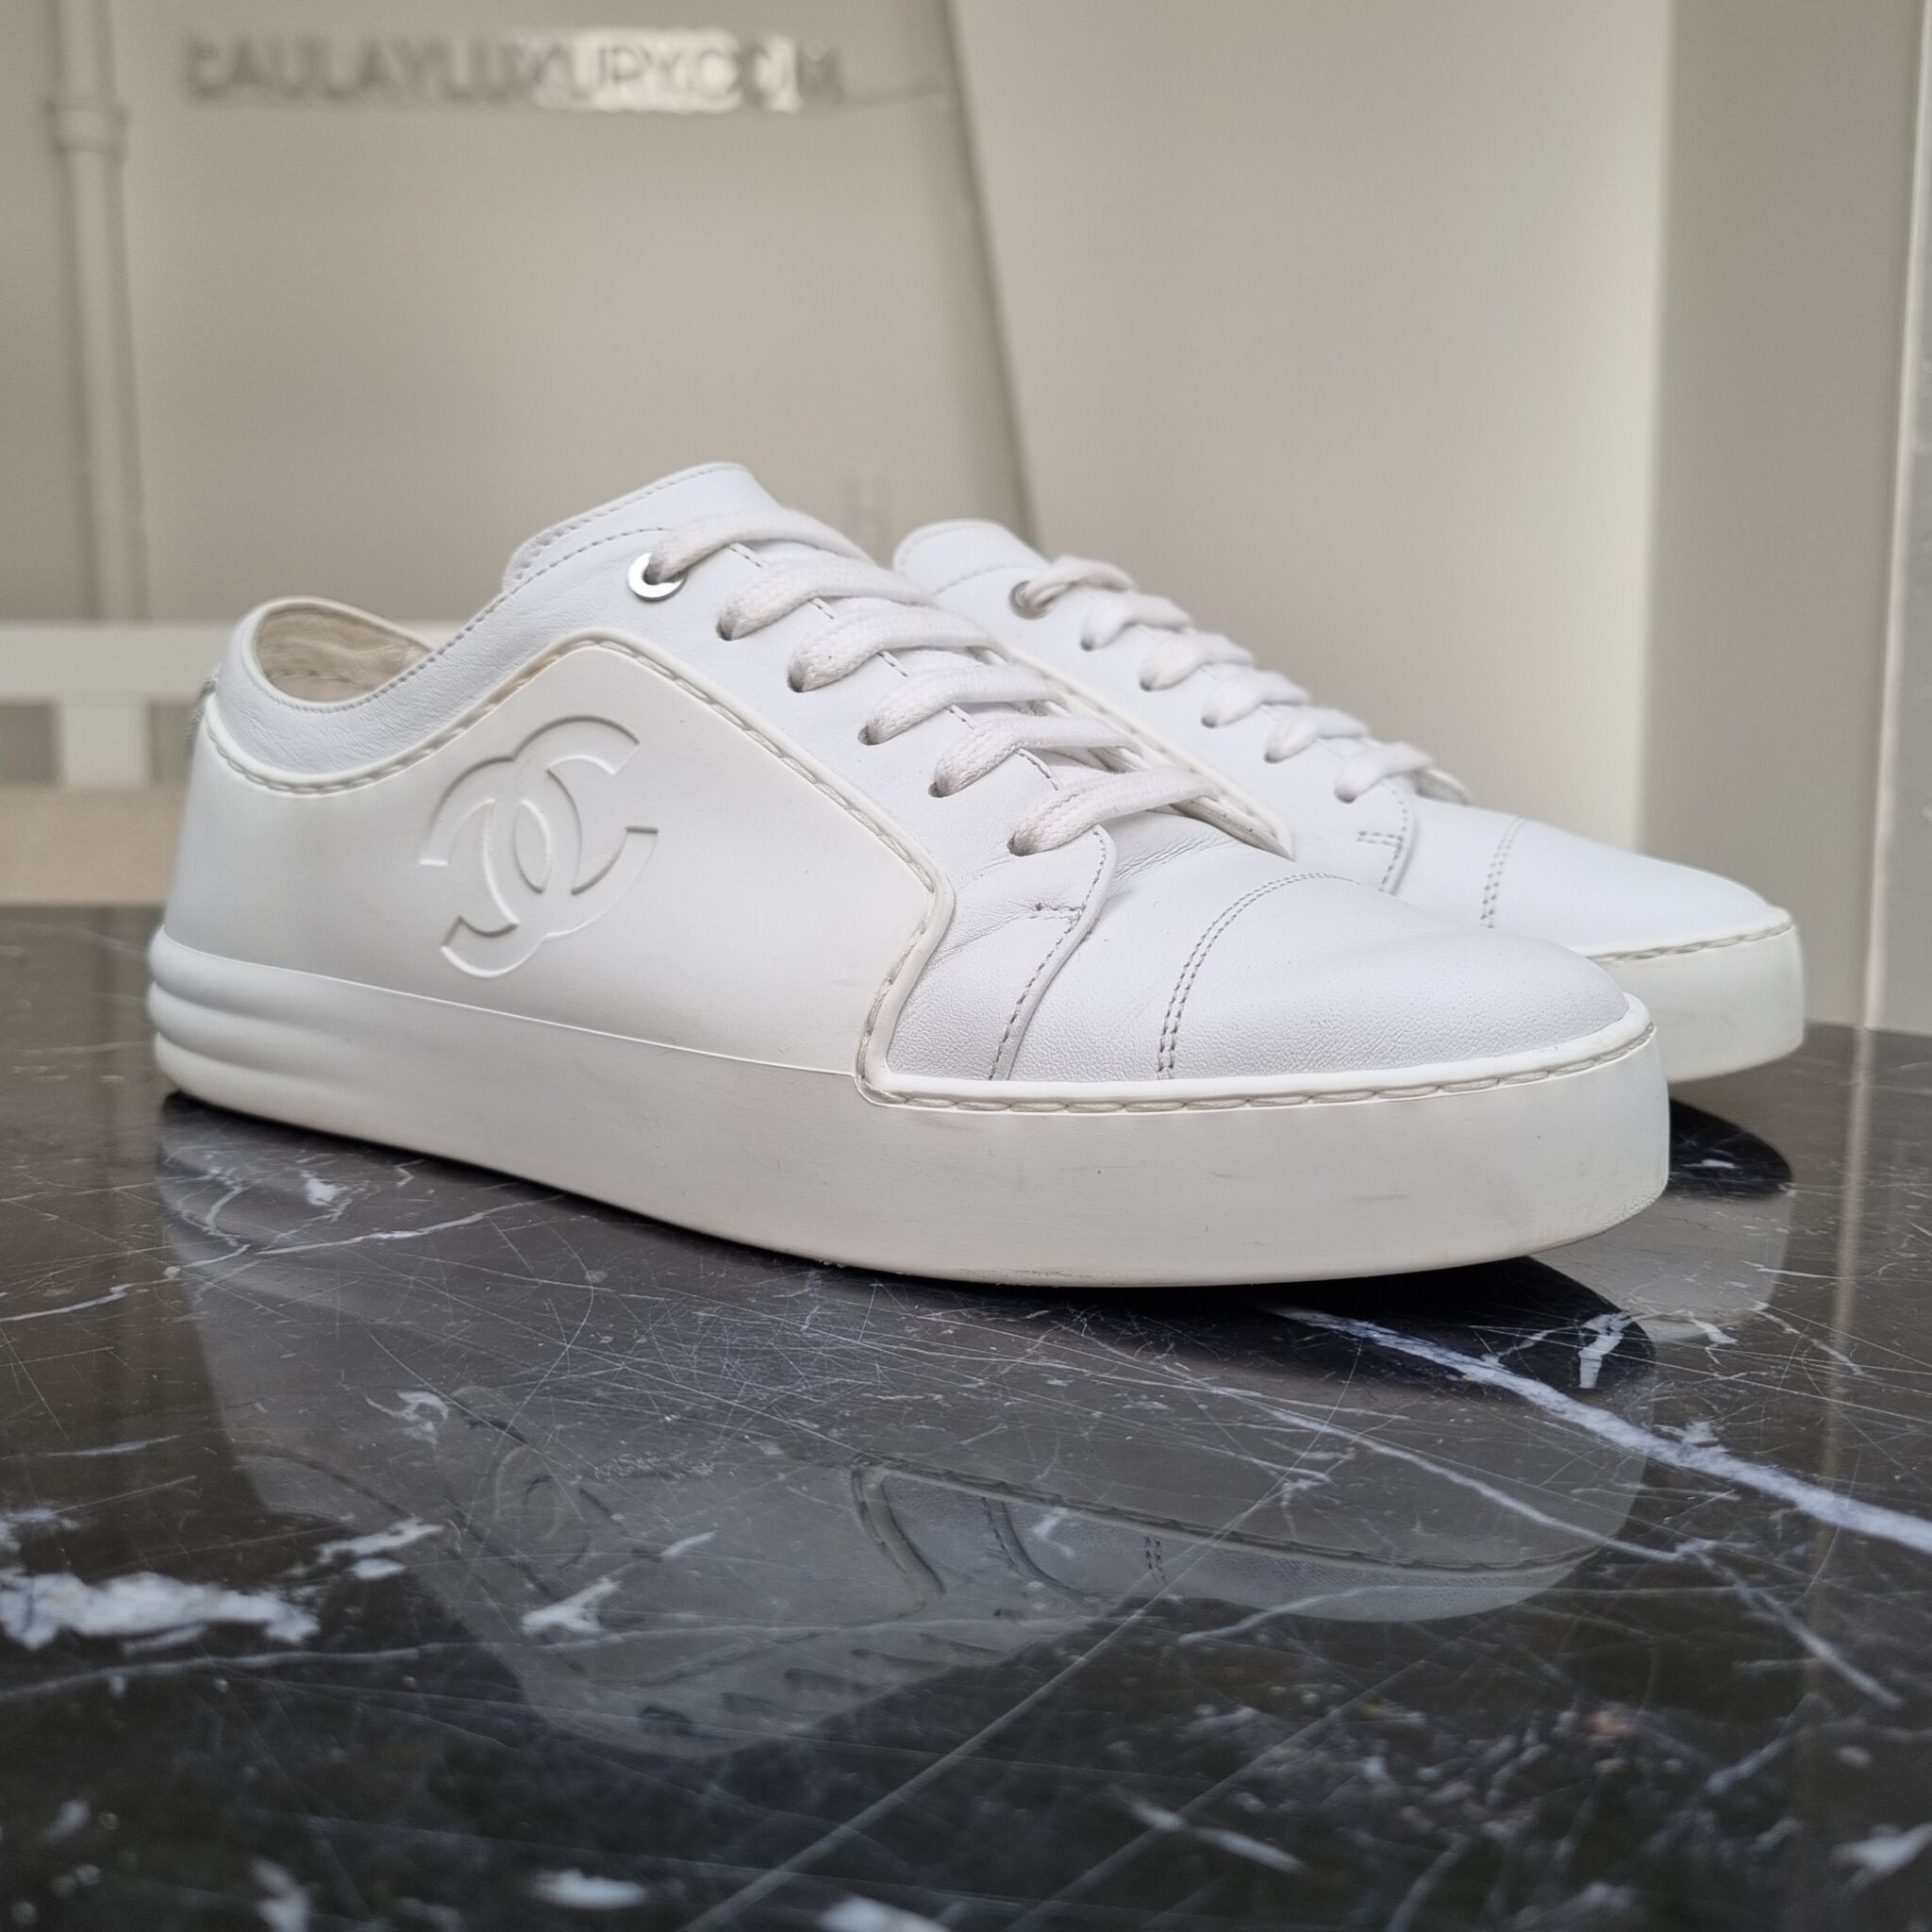 Chanel Skater Sneaker White  myGemma  DE  Item 125521